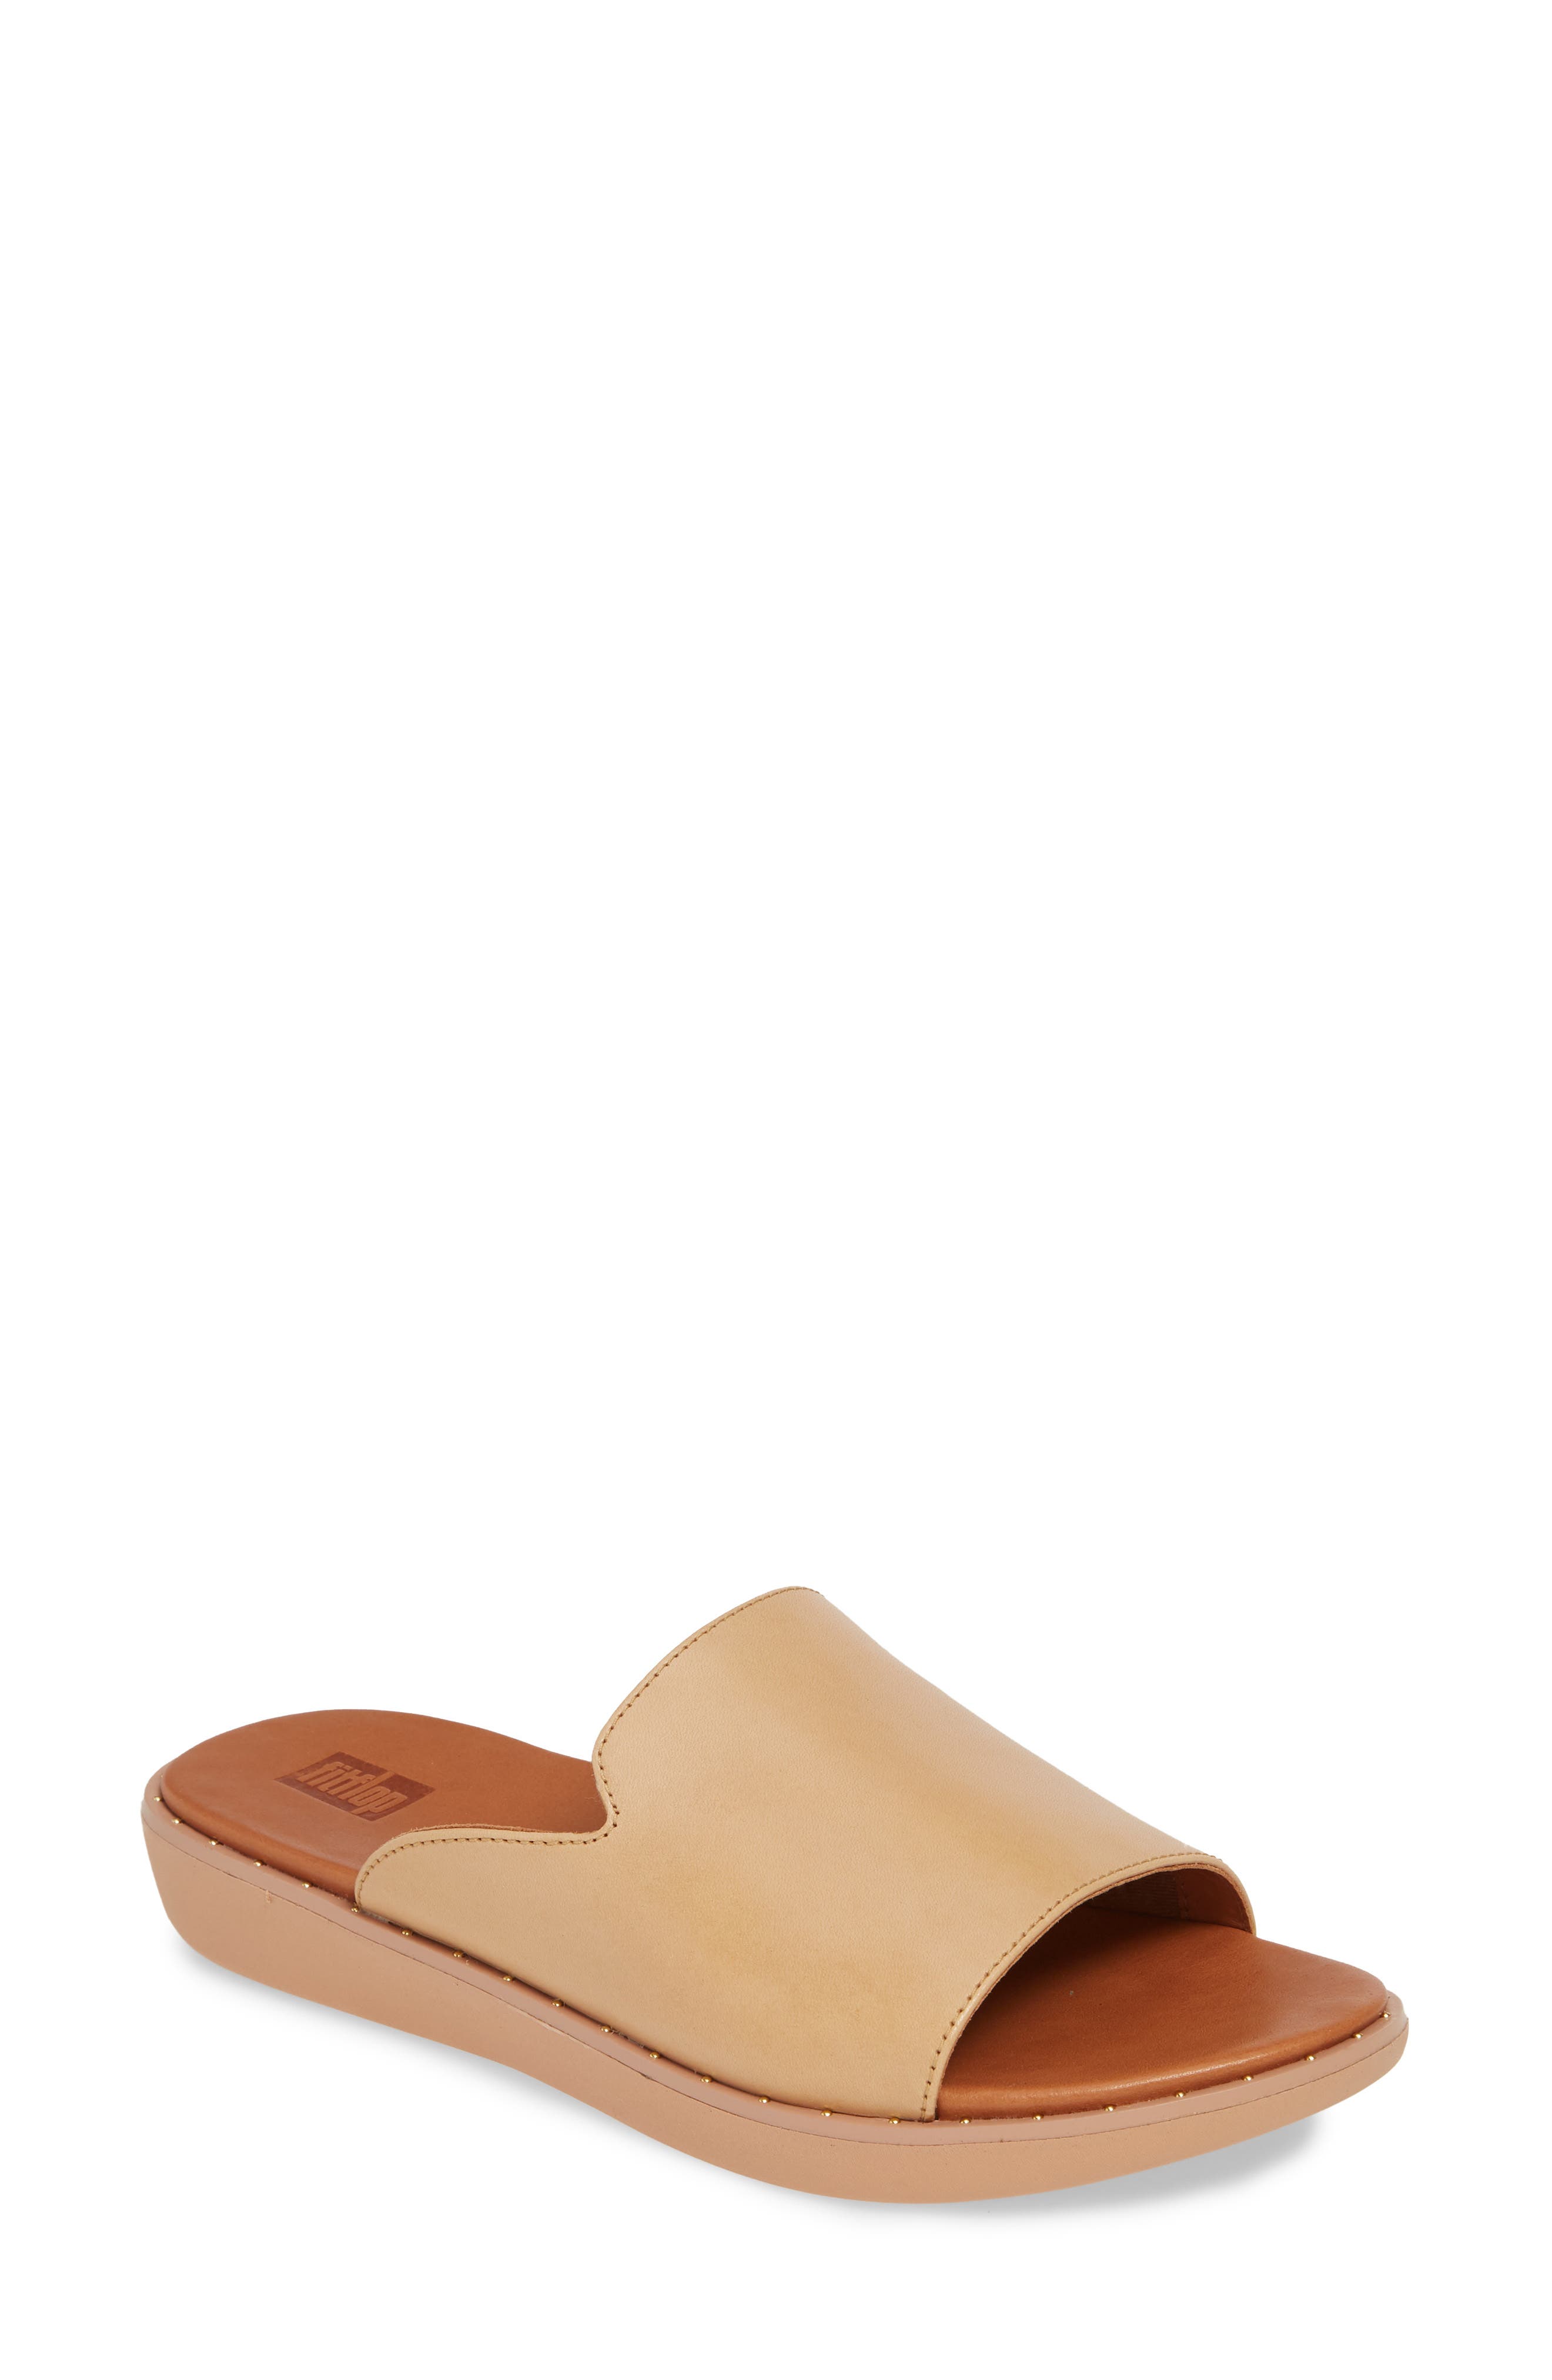 Fitflop | Saffi Leather Slide Sandal 